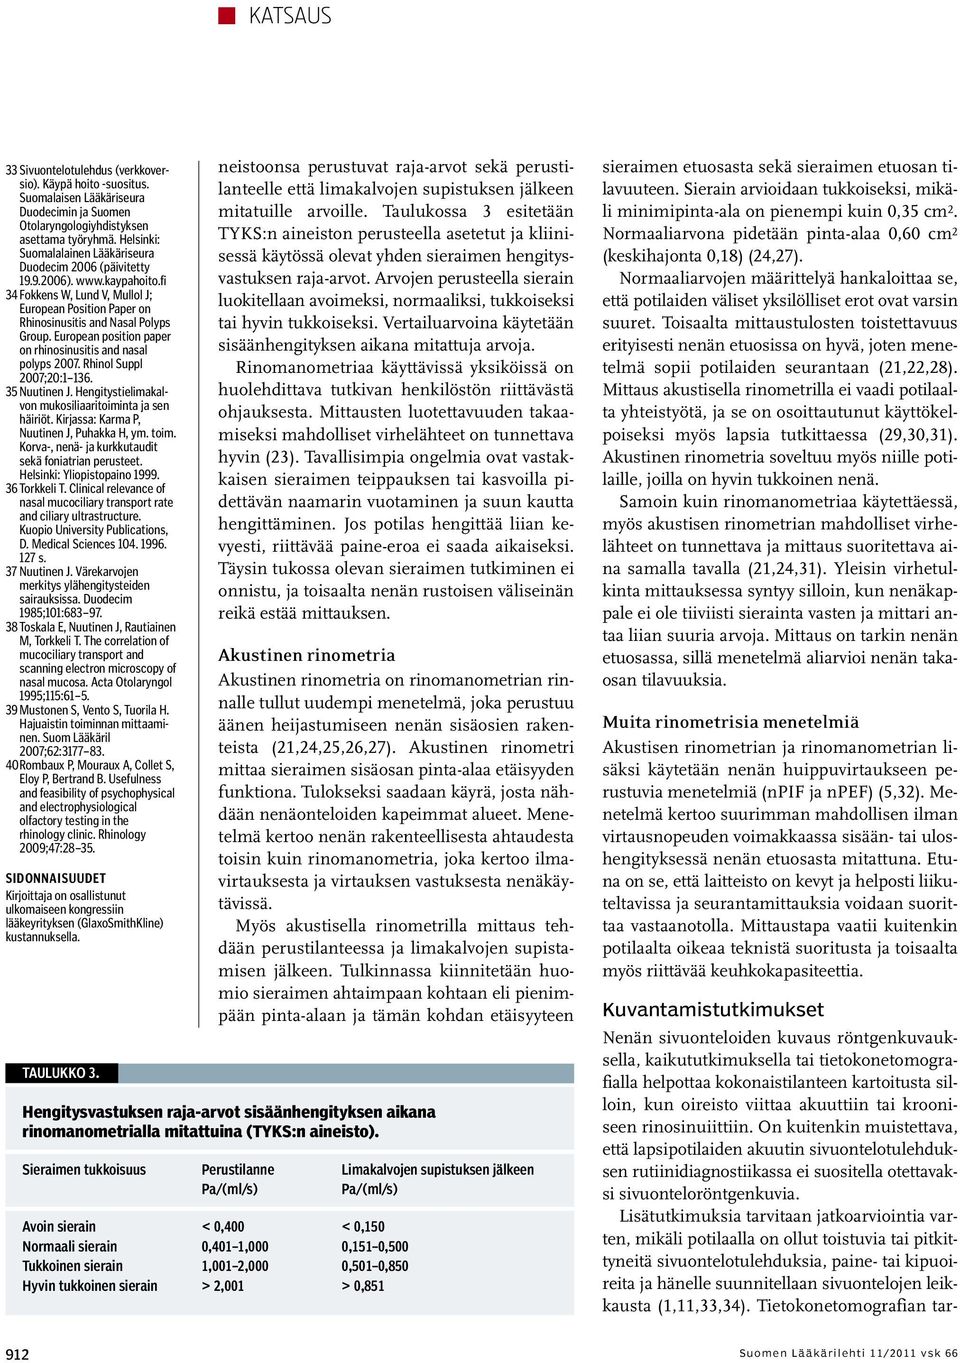 European position paper on rhinosinusitis and nasal polyps 2007. Rhinol Suppl 2007;20:1 136. 35 Nuutinen J. Hengitystielimakalvon mukosiliaaritoiminta ja sen häiriöt.